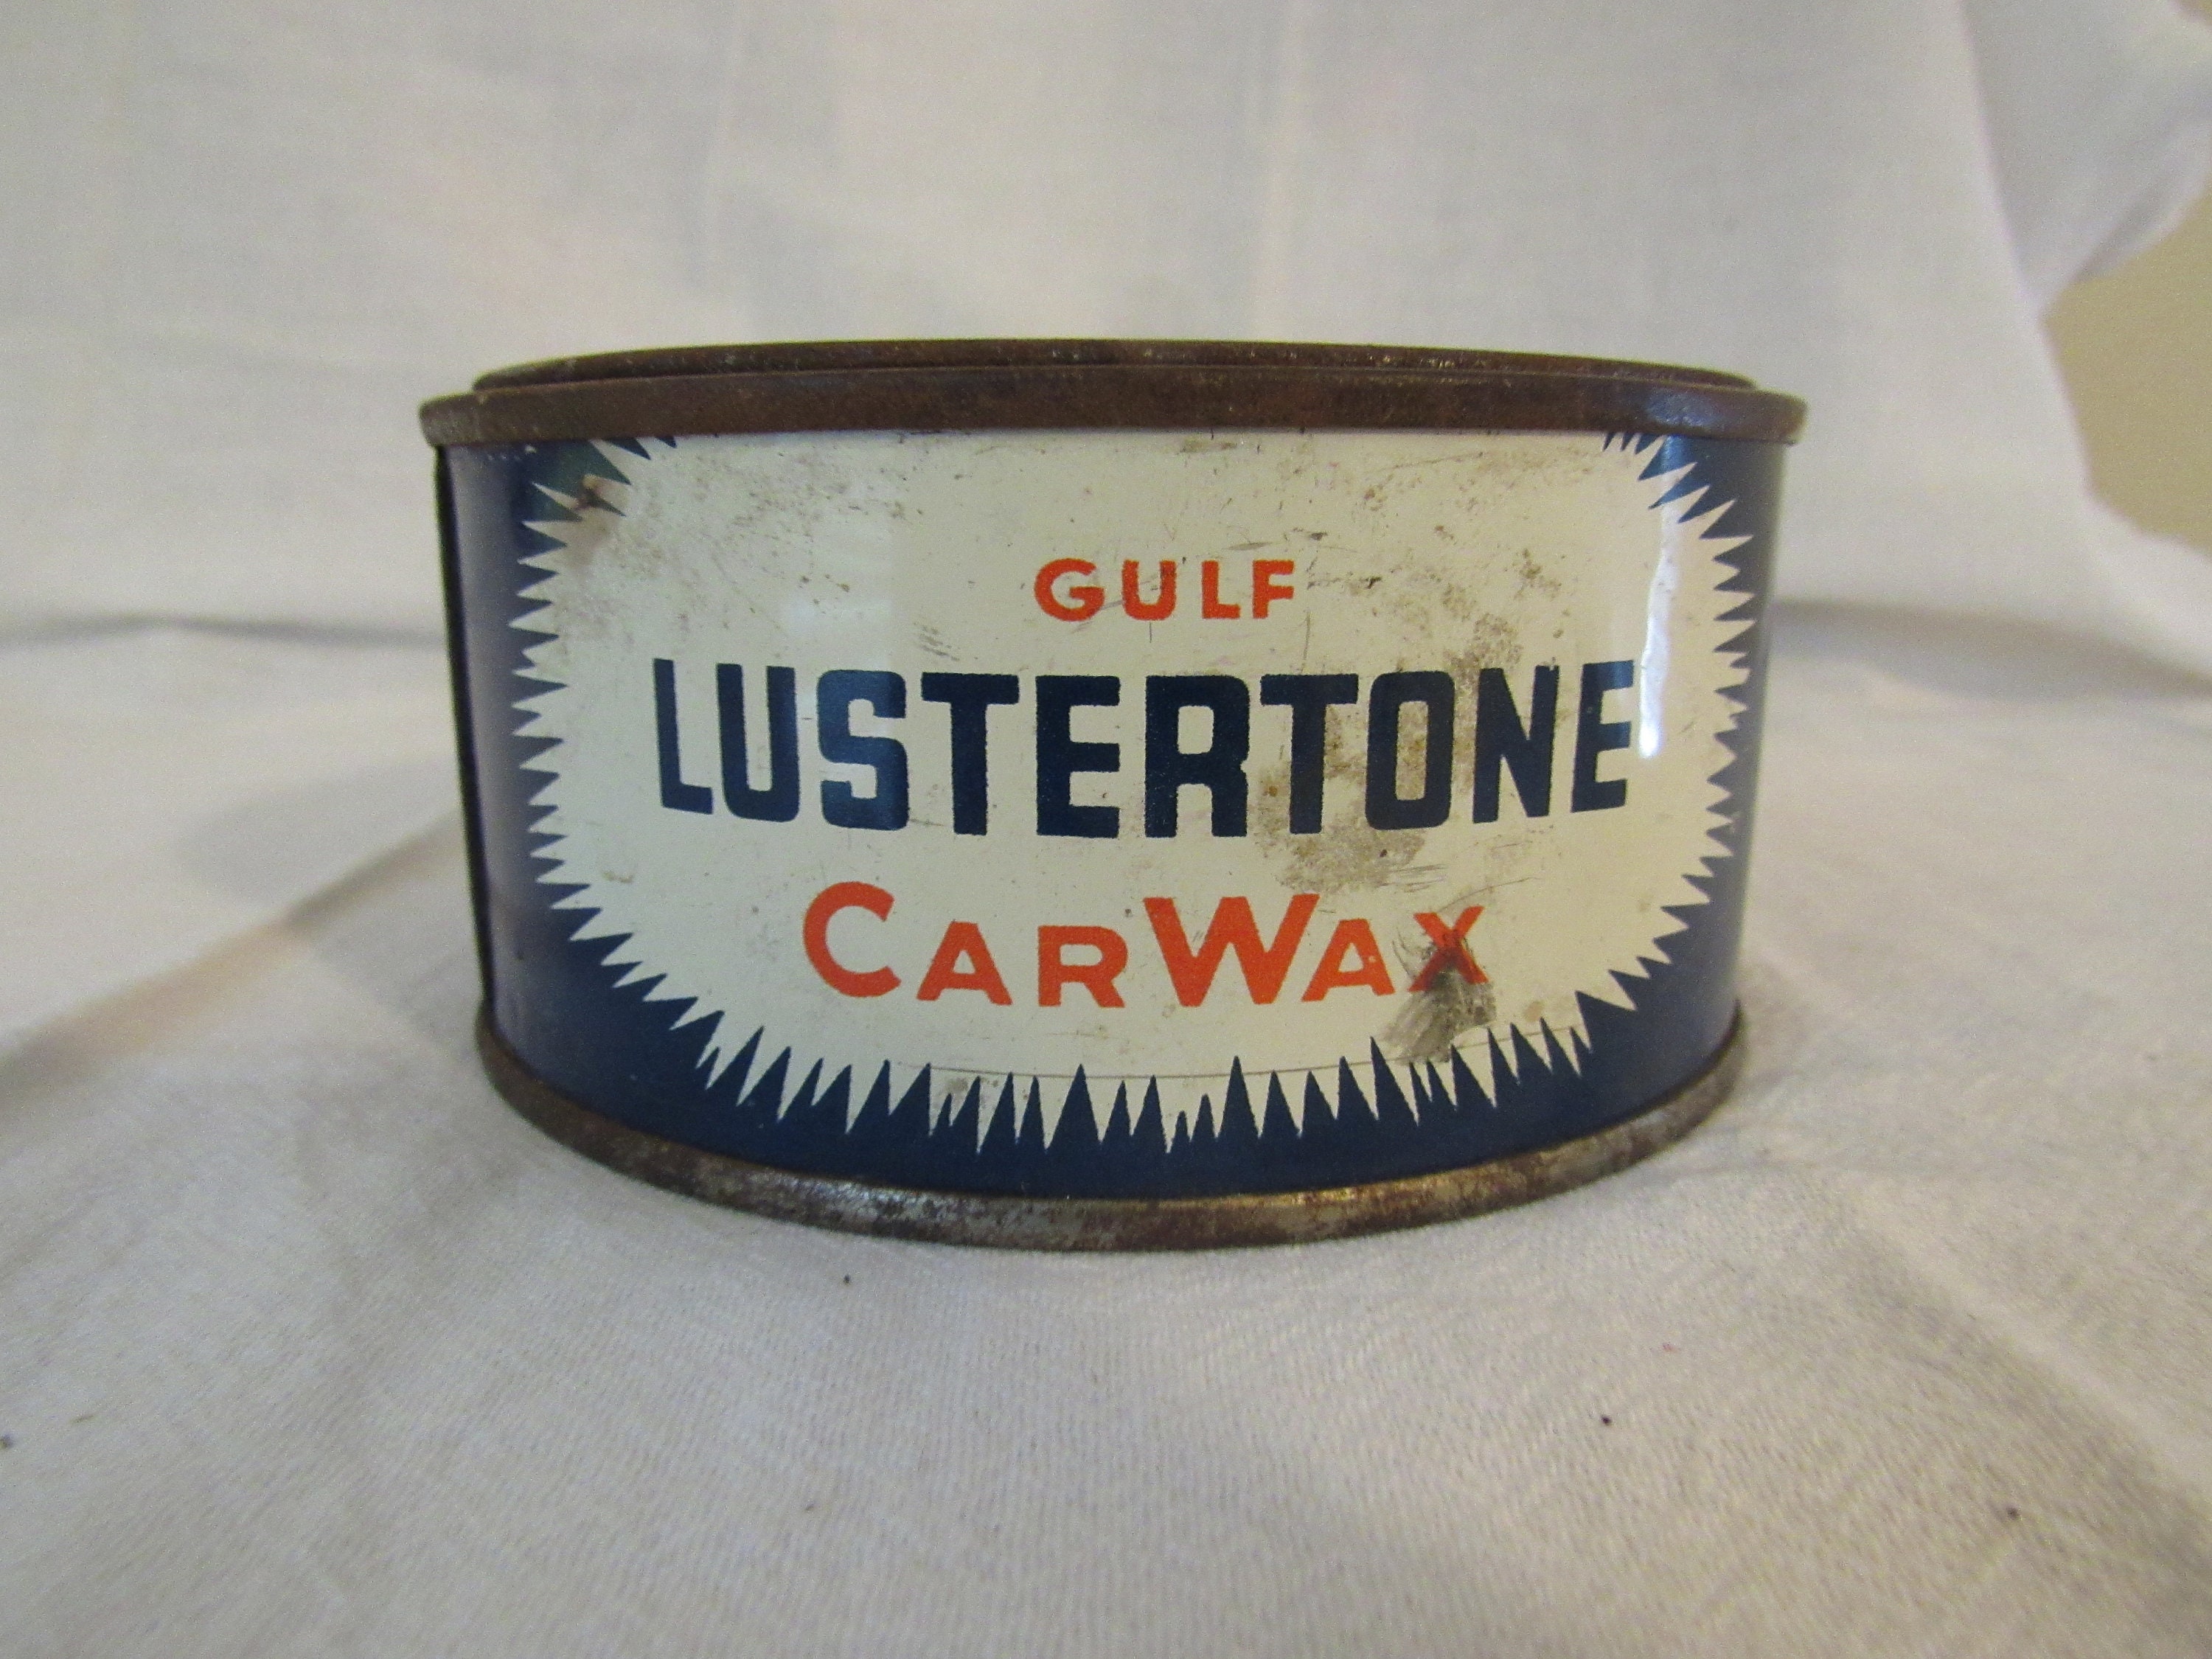 Vintage Box of Gulf Paraffin Wax 